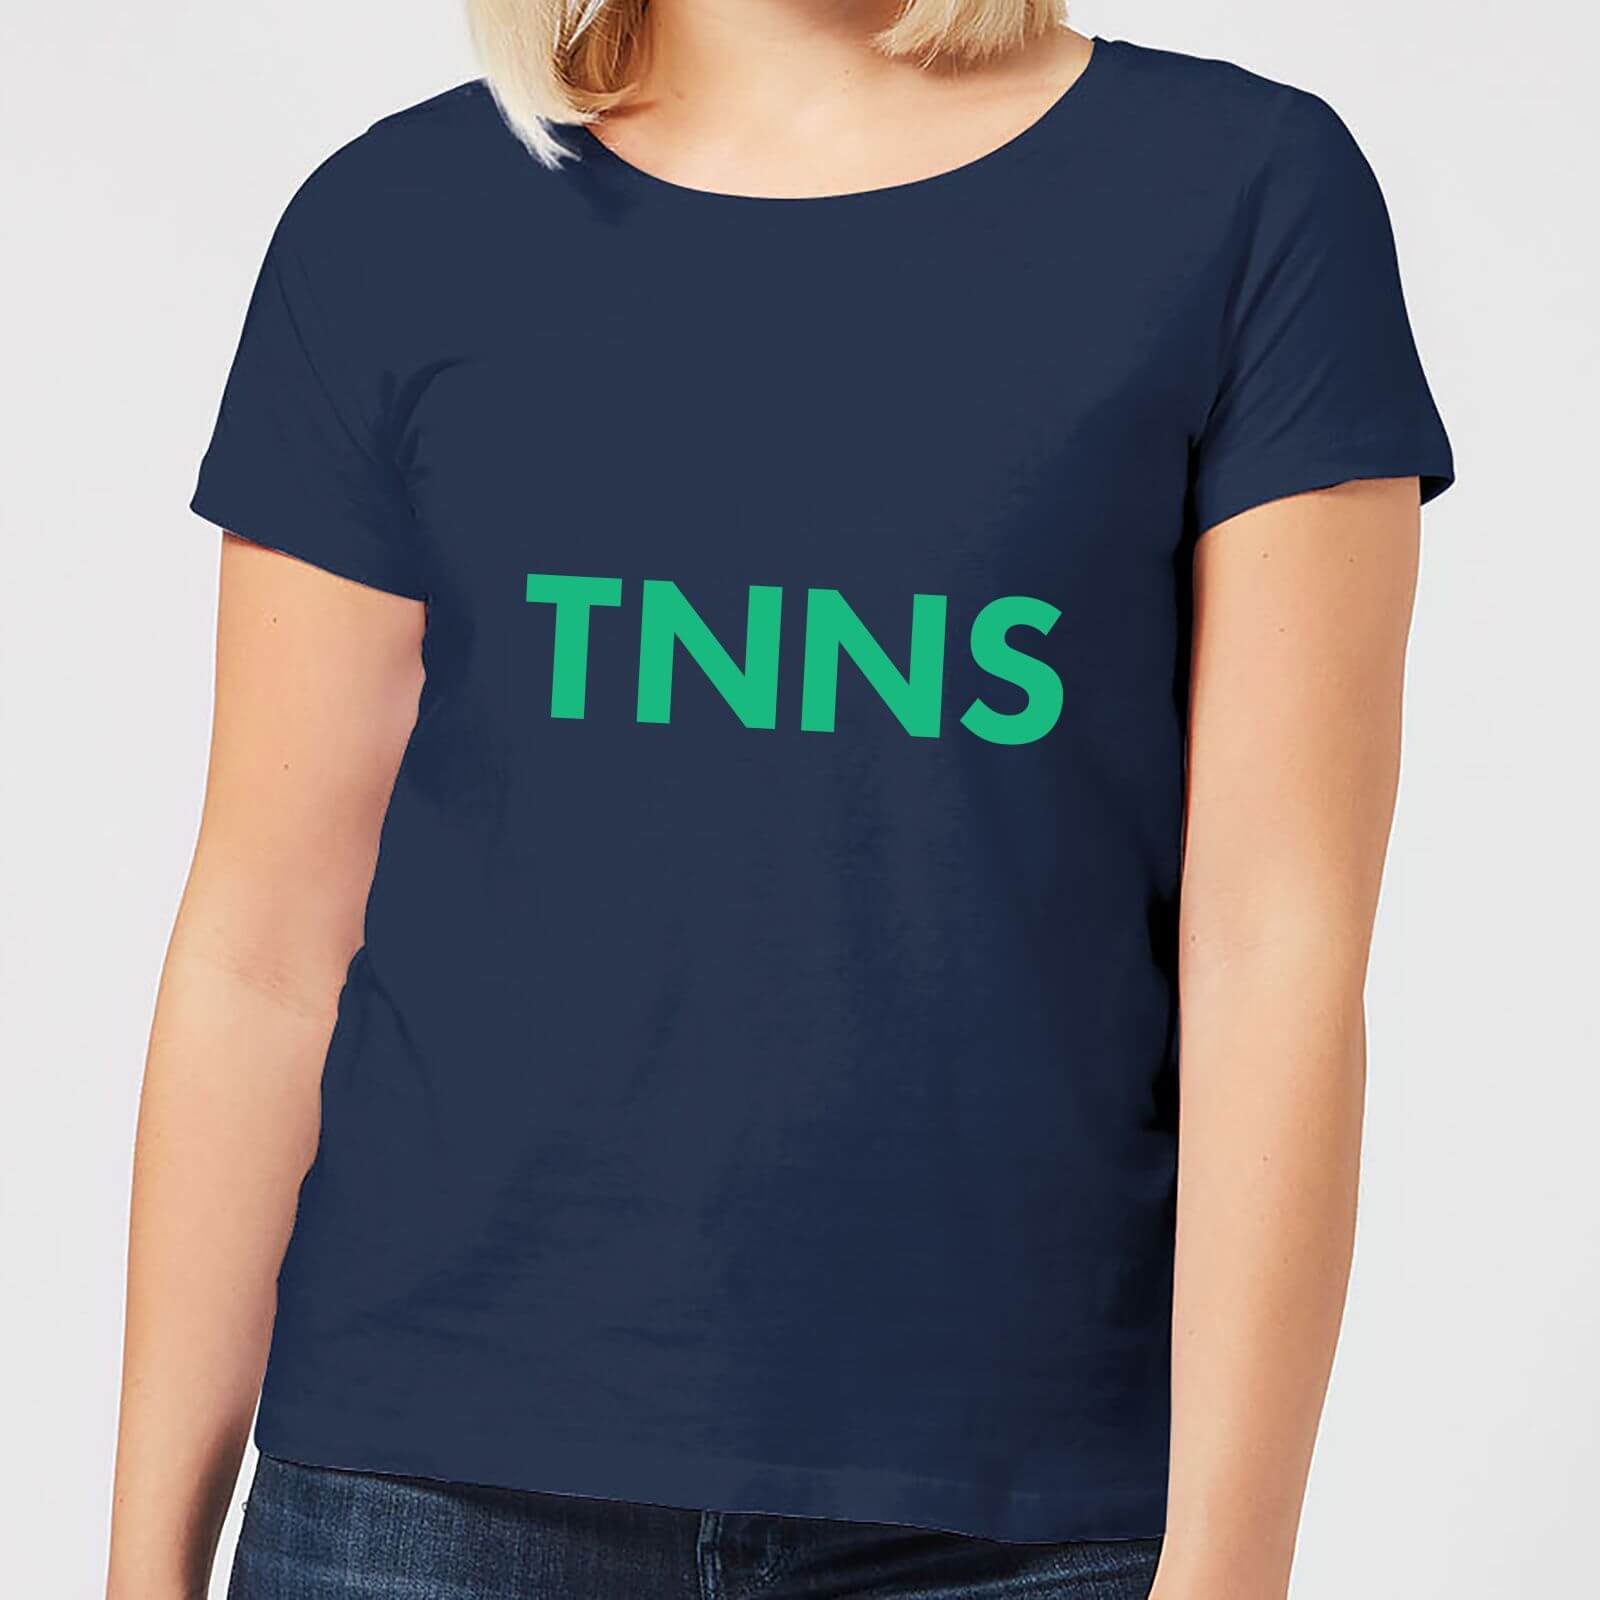 Tnns Women's T-Shirt - Navy - S - Navy